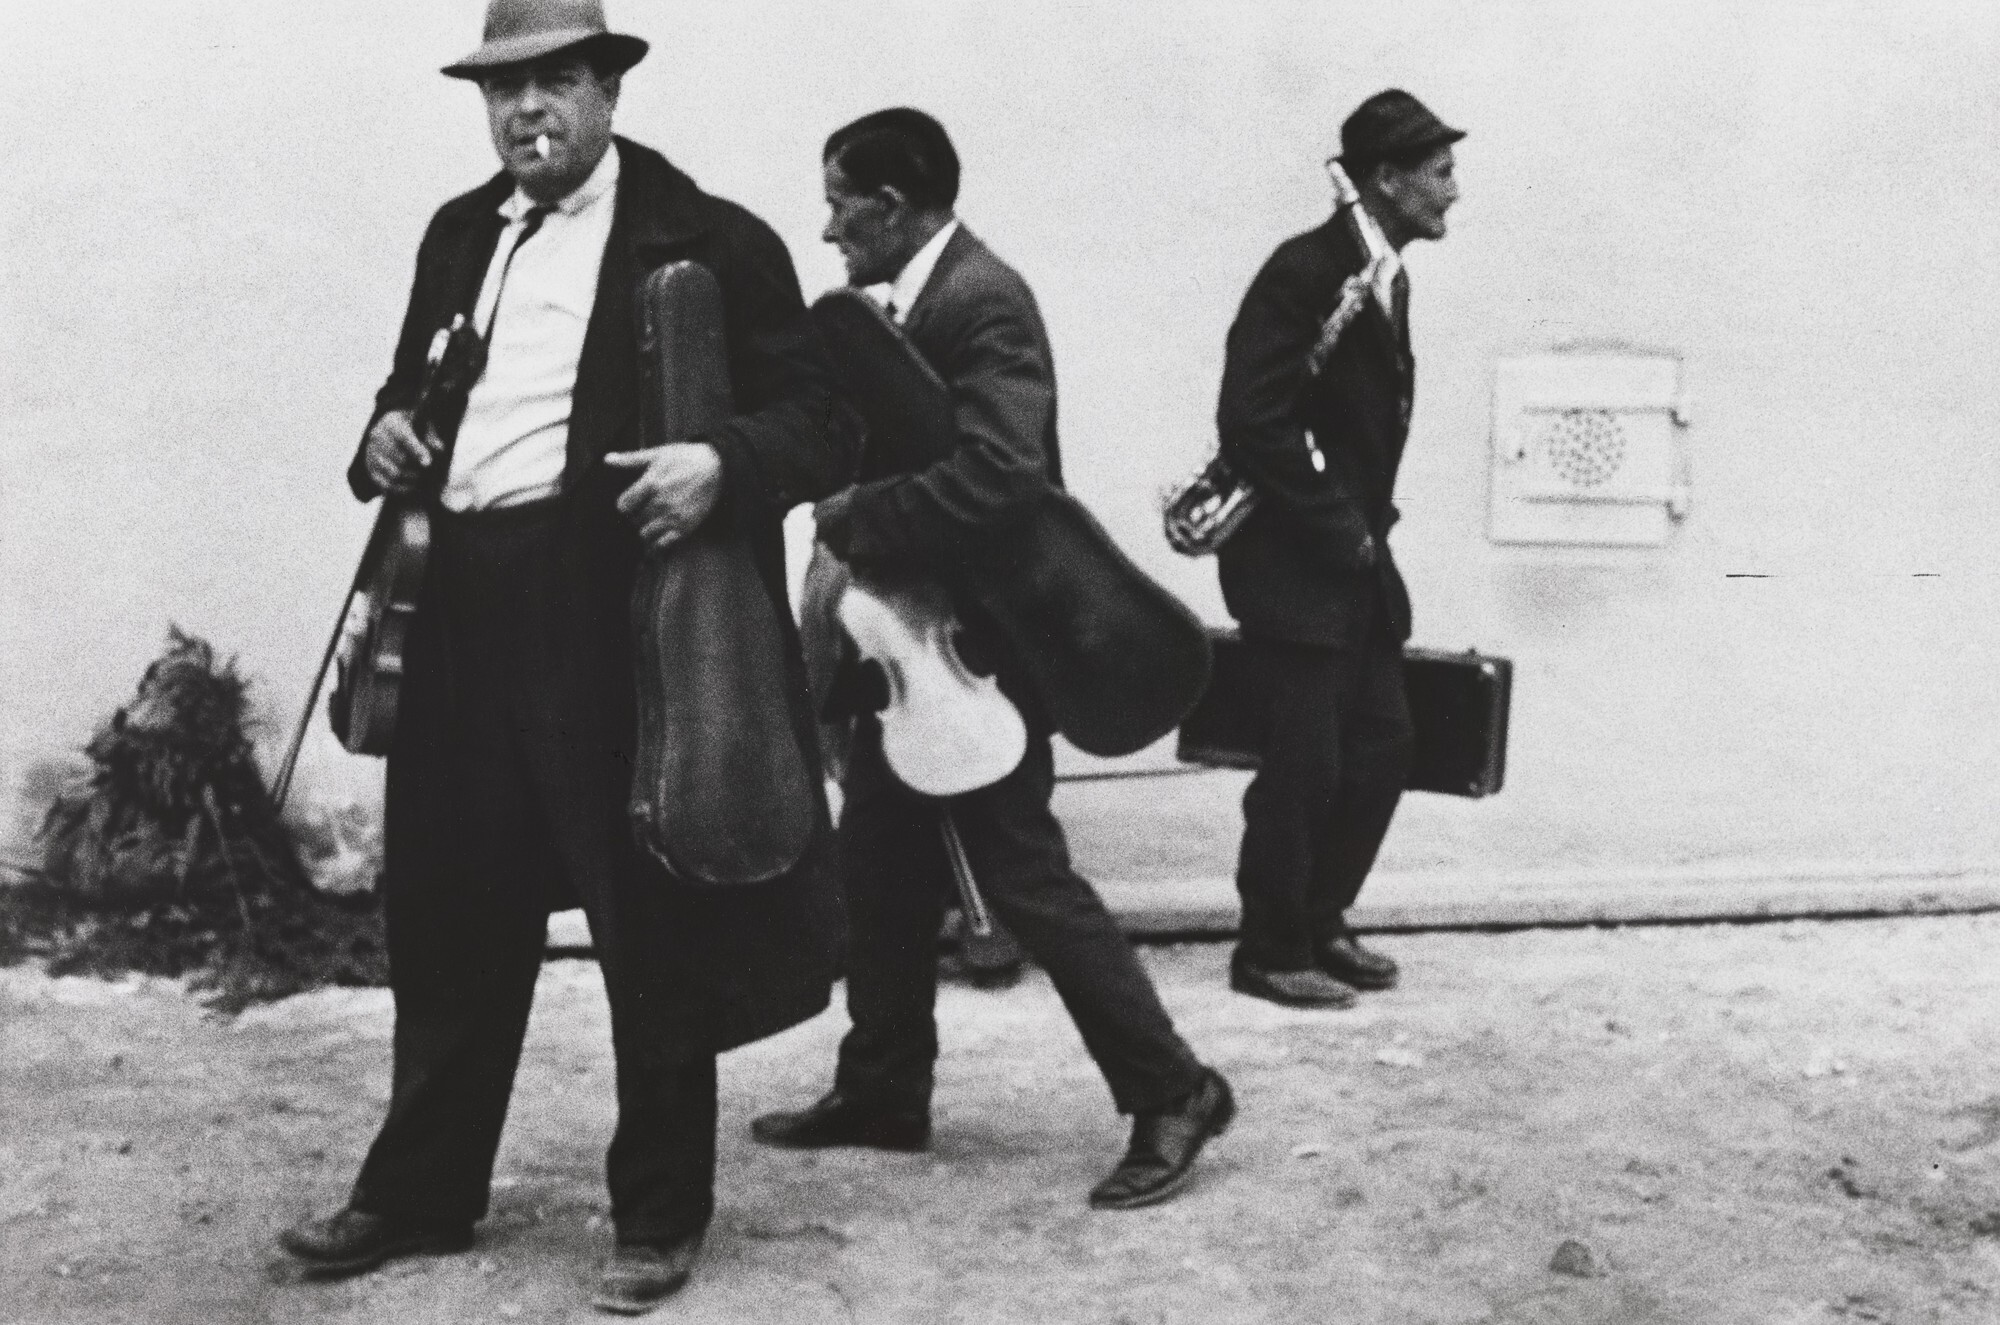 Музыканты, 1960-е. Фотограф Йозеф Куделка